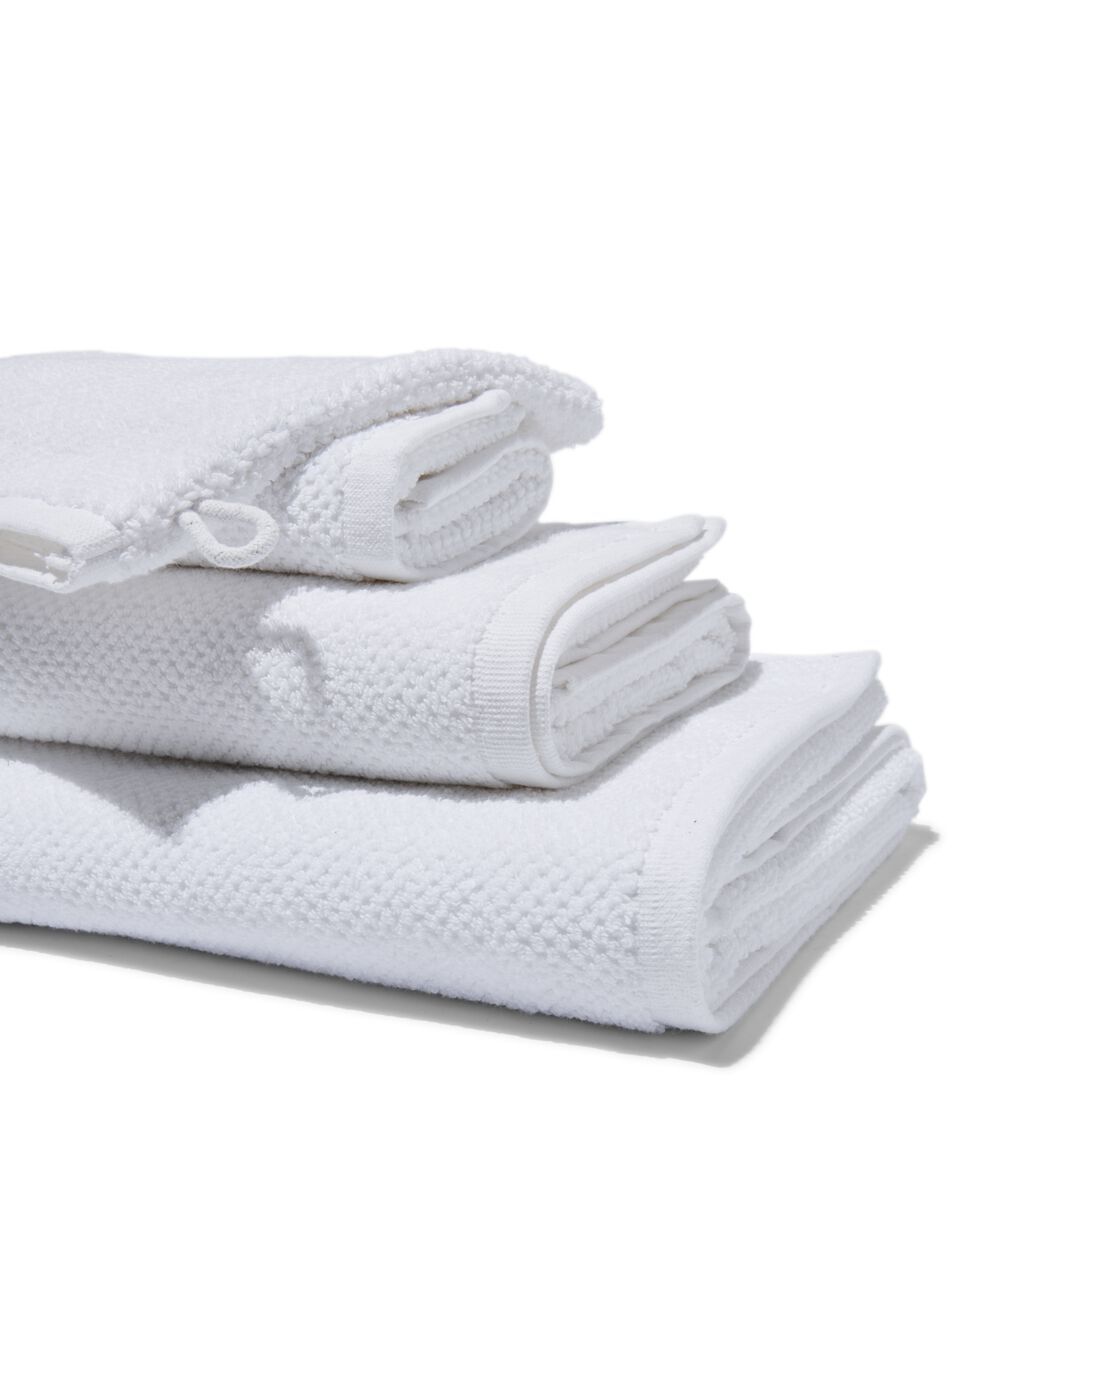 HEMA HEMA Handdoeken Tweedekans Recycled Katoen Wit (wit)